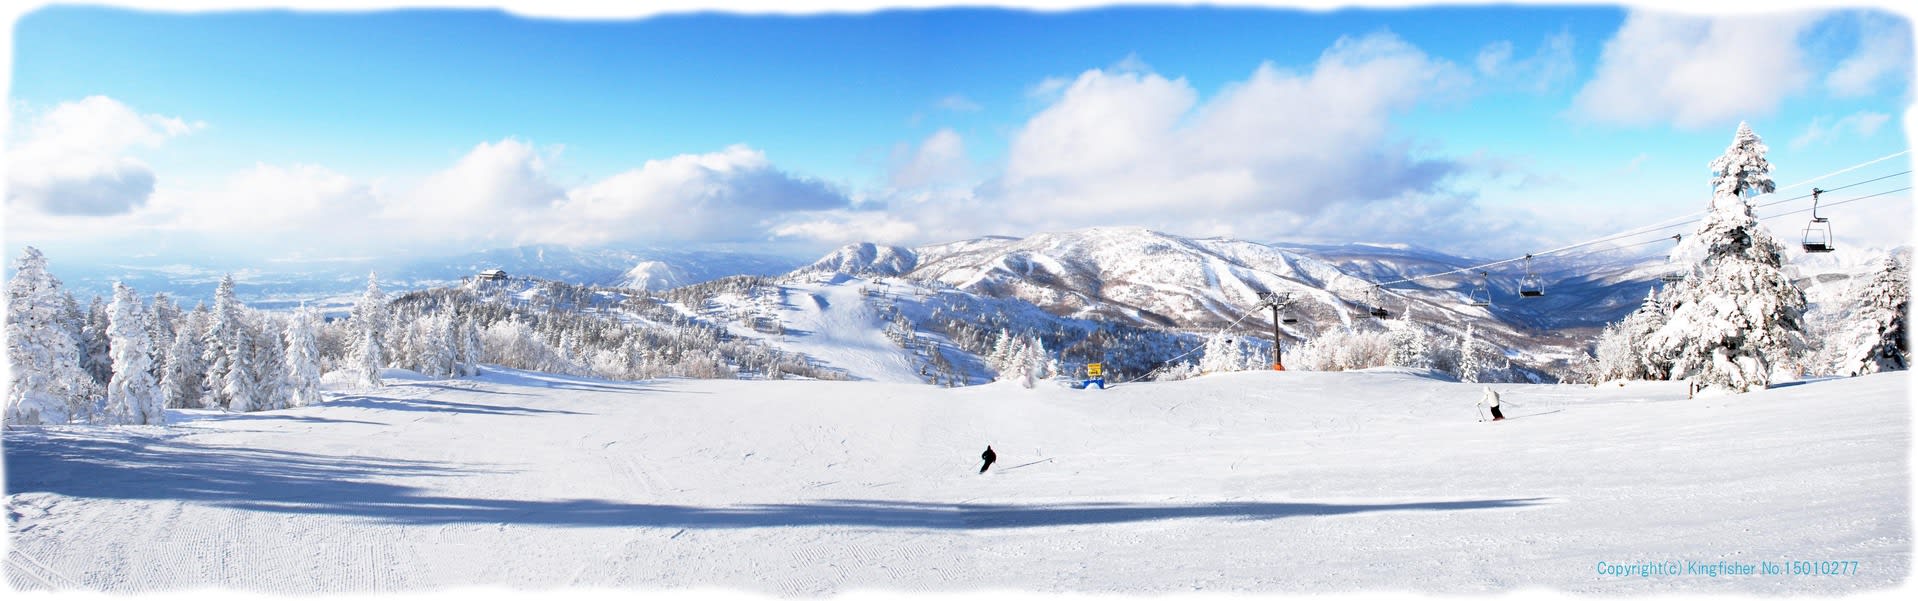 志賀高原スキー場 その2 ヤケビ第一 寺子屋スキー場の眺望 気になる写真